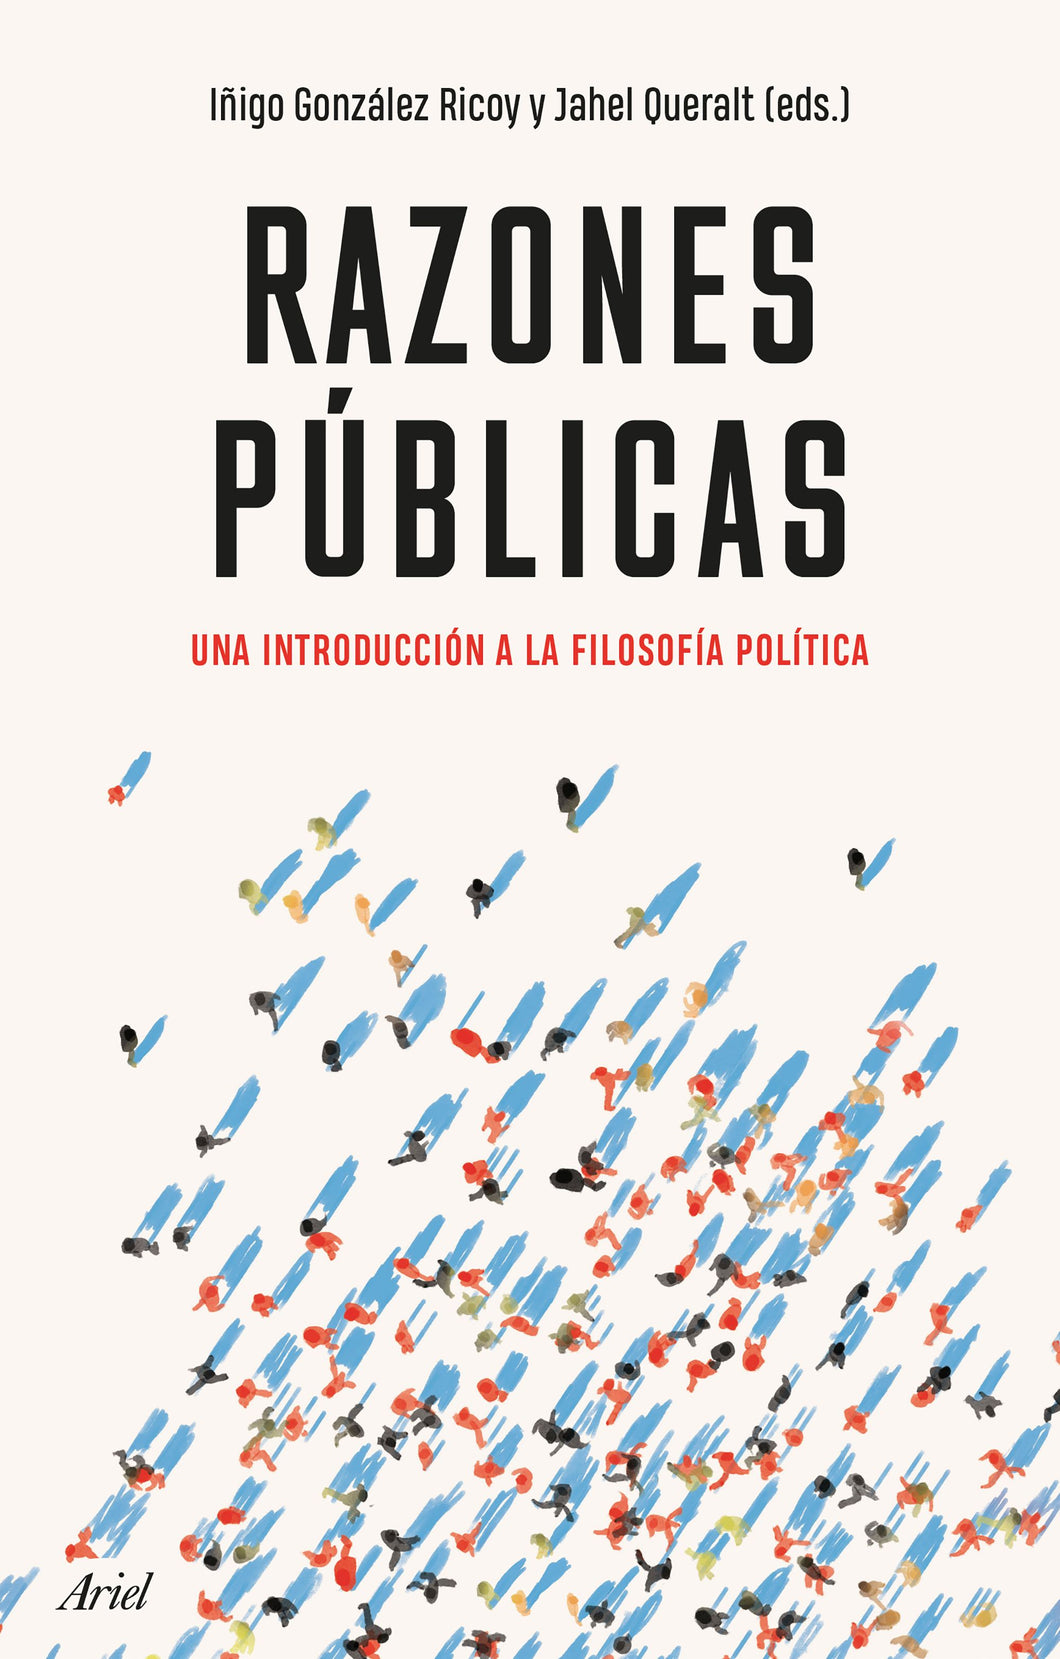 RAZONES PÚBLICAS: UNA INTRODUCCIÓN A LA FILOSOFÍA POLÍTICA - Iñigo González Ricoy y Jahel Queralt (eds.)